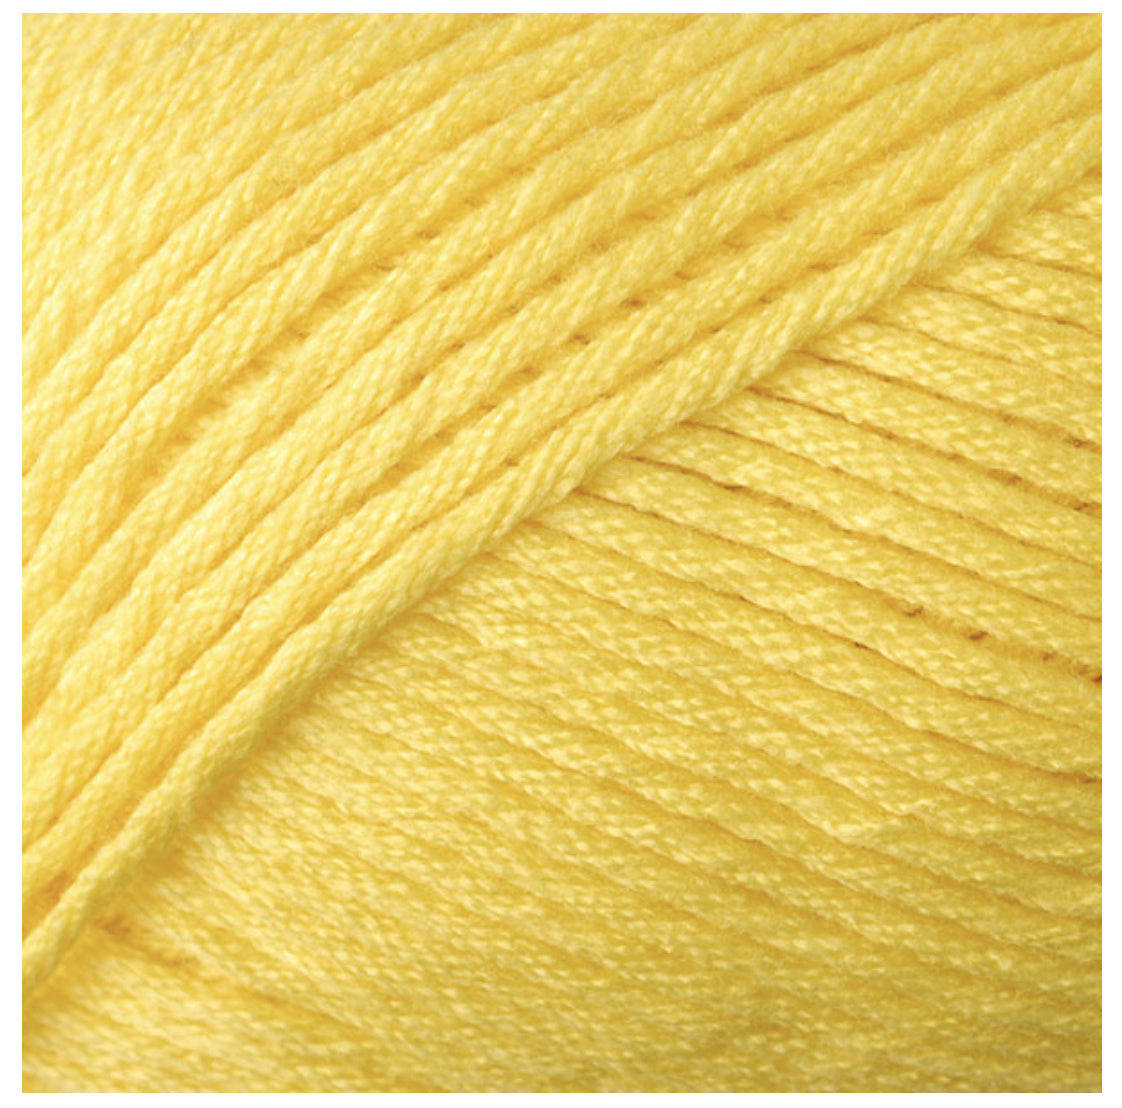 Colorful Crochet Skirt/Cowl - XS/S/M - Collegiate Crochet Kit Alternative View #4